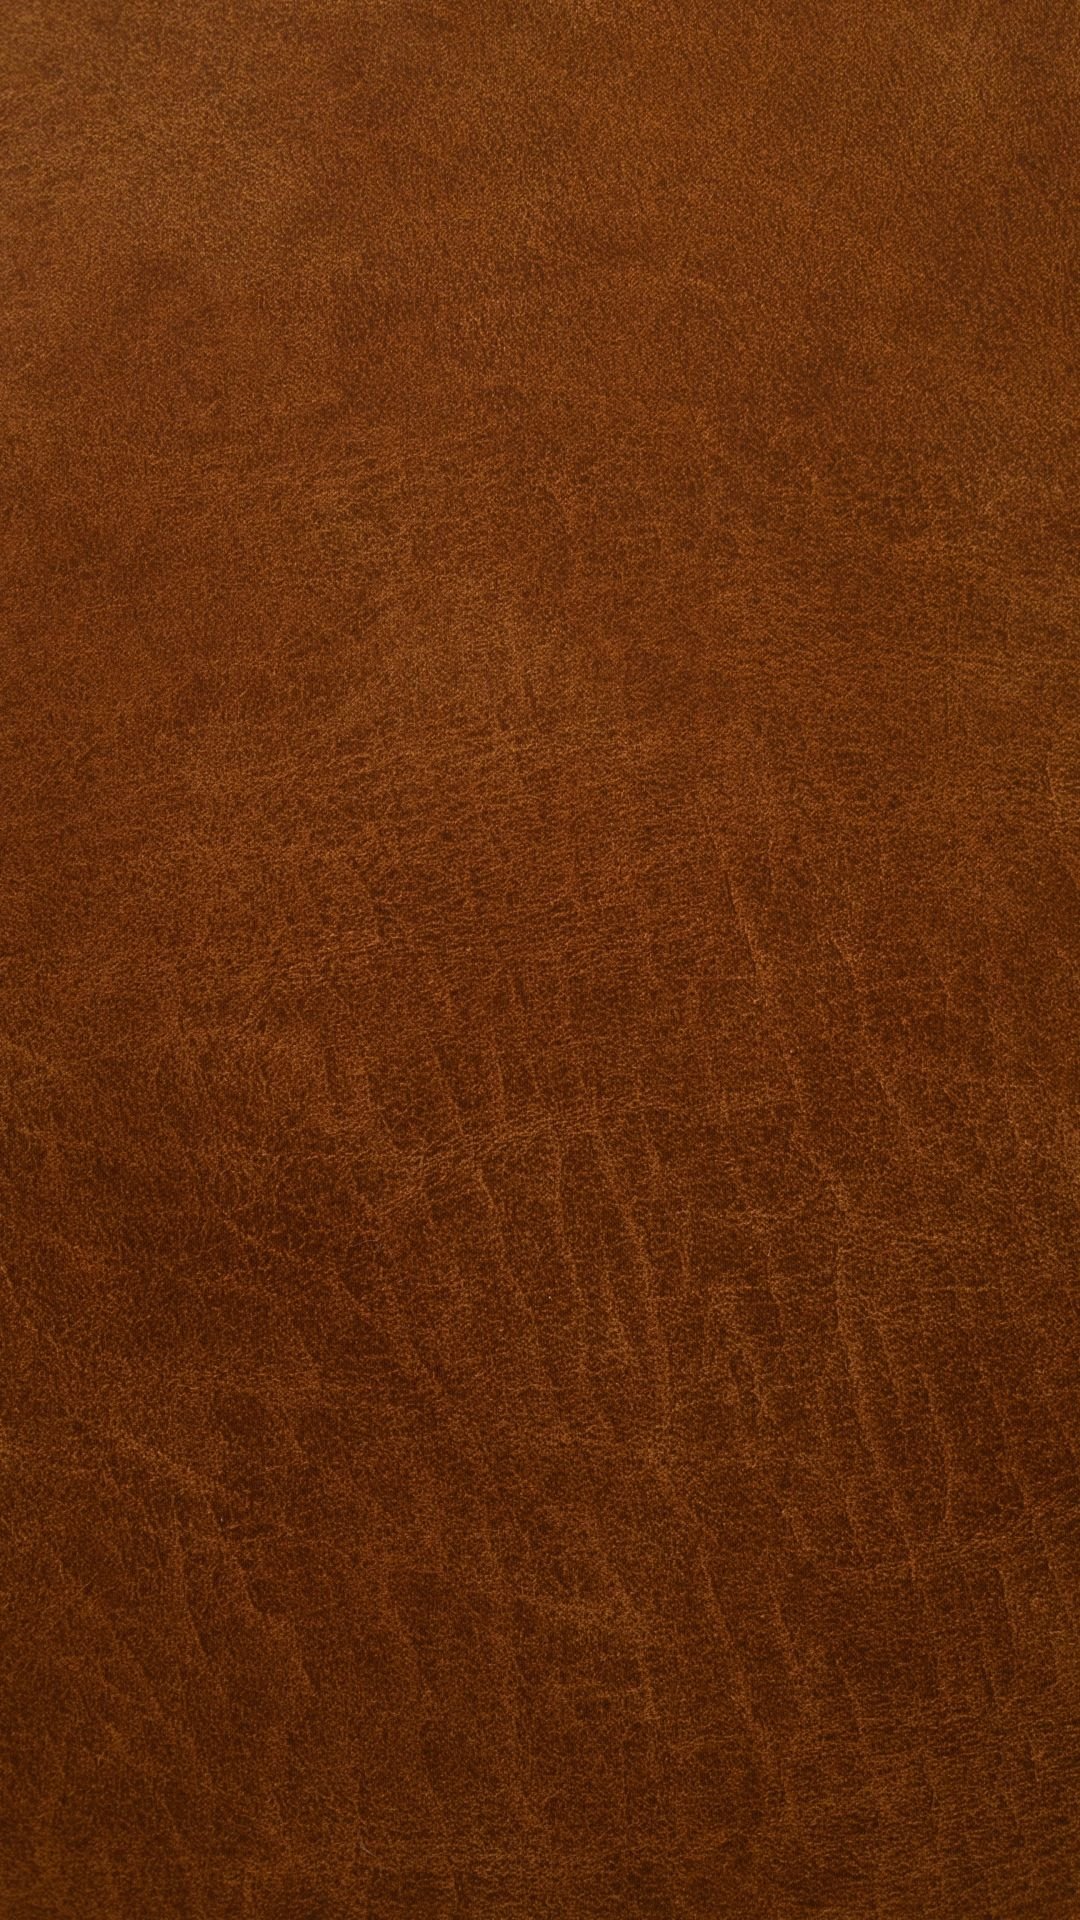 Brown Aesthetic Wallpaper 1